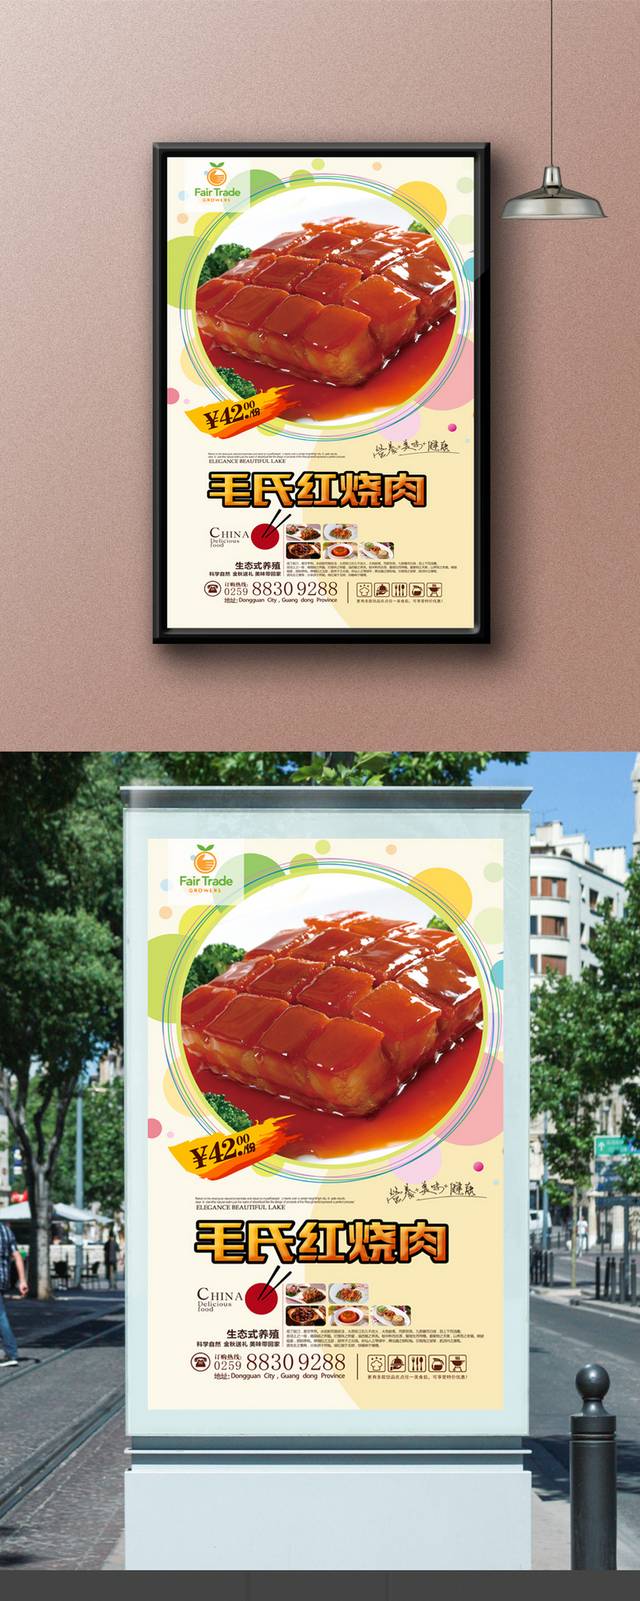 清新毛氏红烧肉宣传海报设计